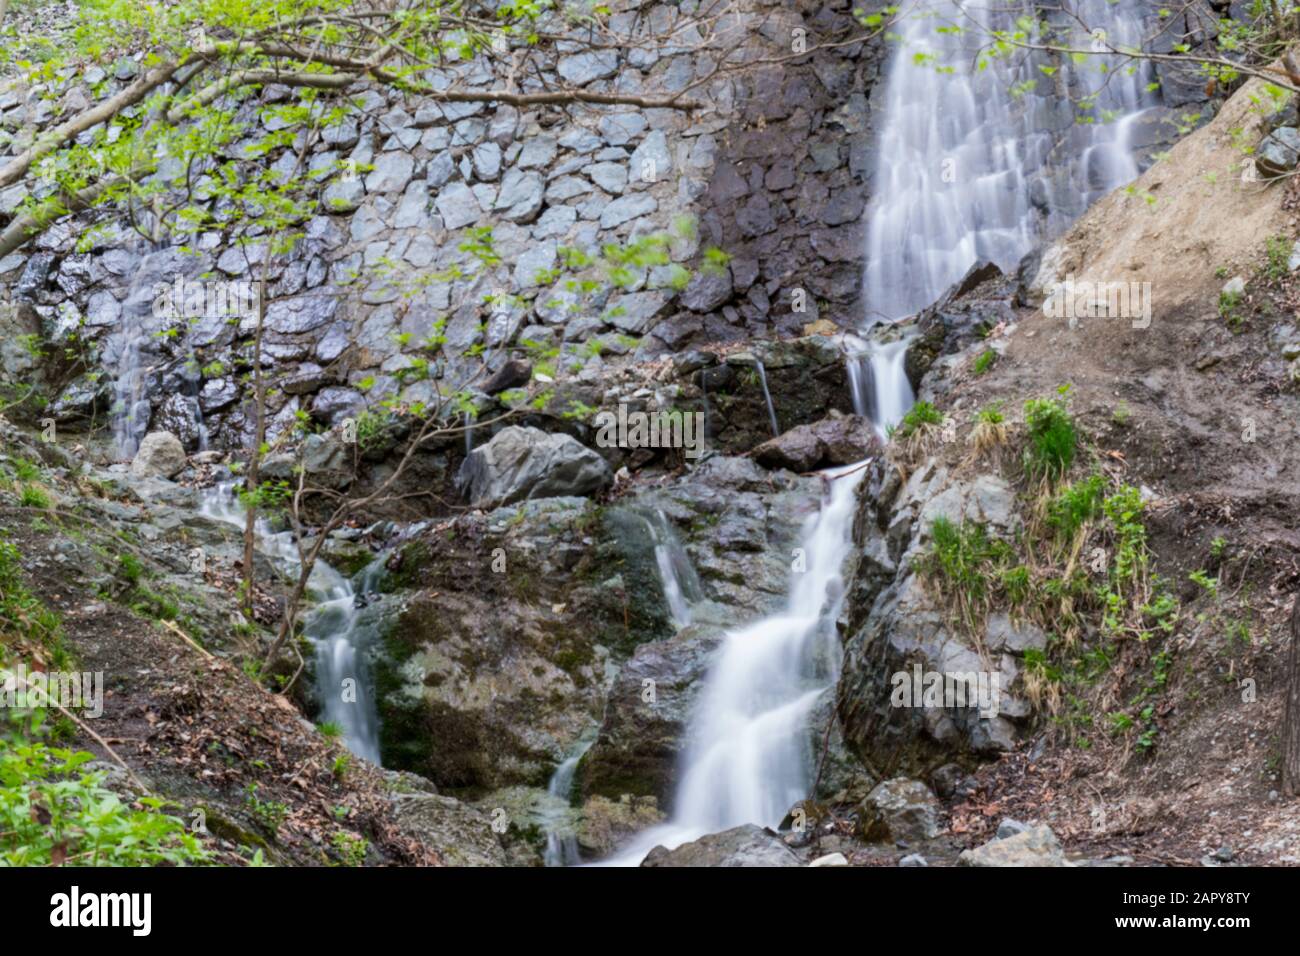 Langzeitfotografie mit künstlichem Wasserfall auf dem Weg des Flusses Golab darreh, nördlich von teheran, iran Stockfoto